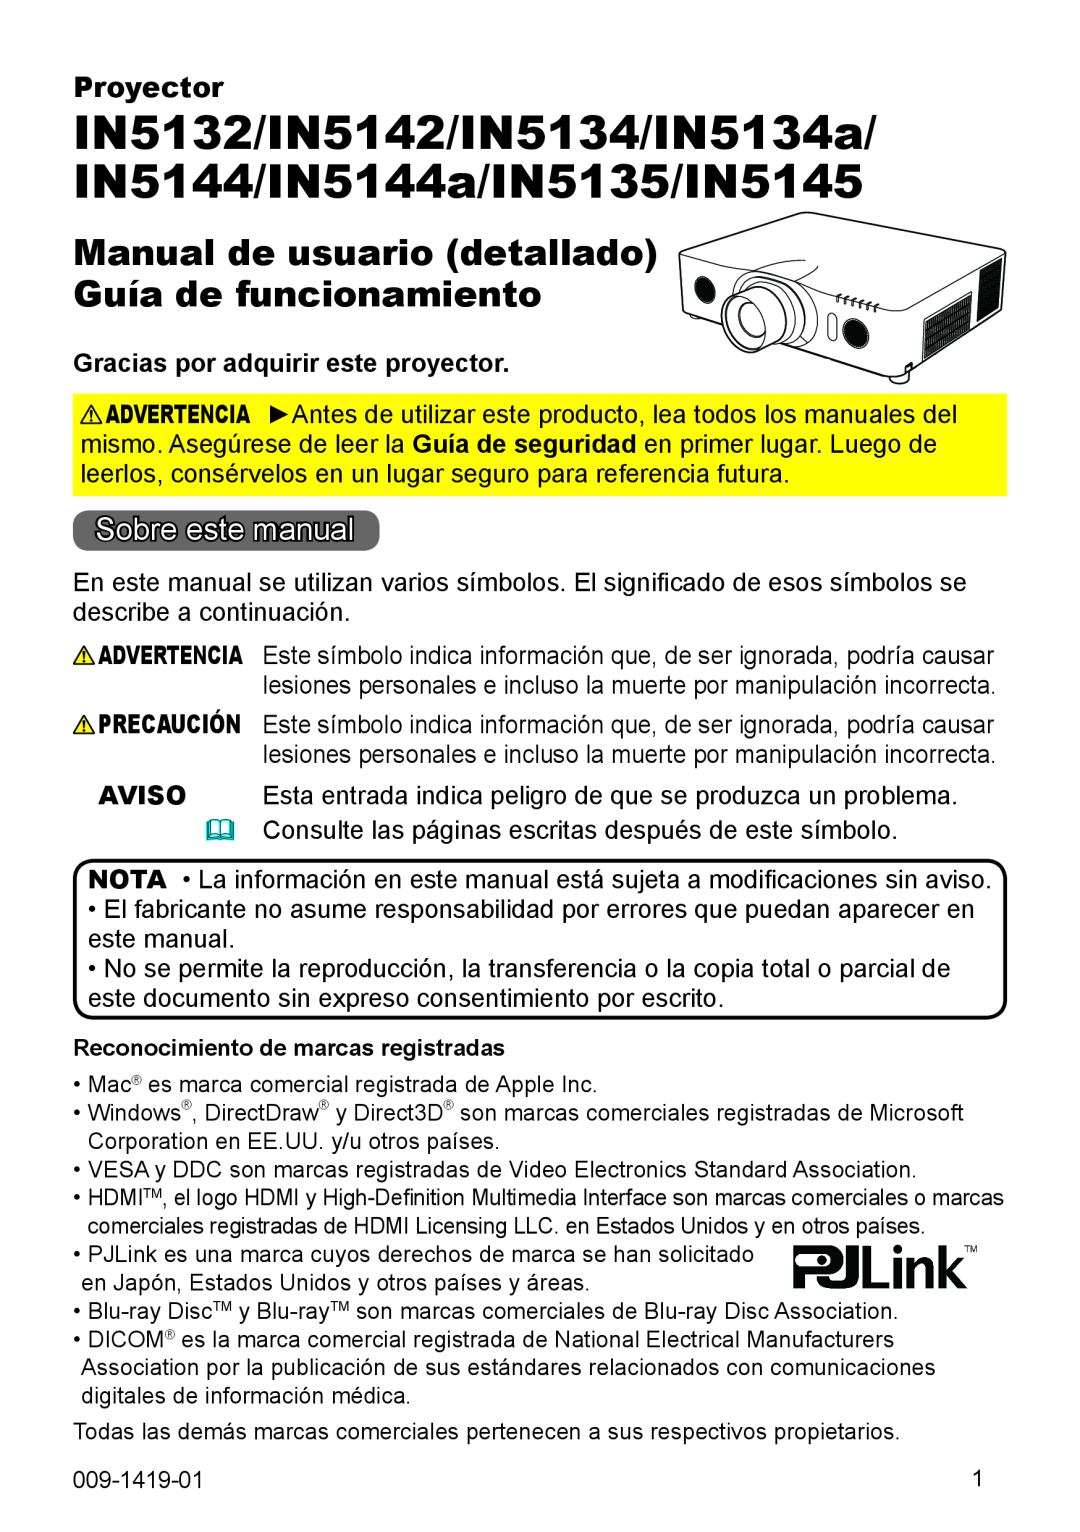 InFocus IN5144C Manual de usuario detallado Guía de funcionamiento, Sobre este manual, Gracias por adquirir este proyector 